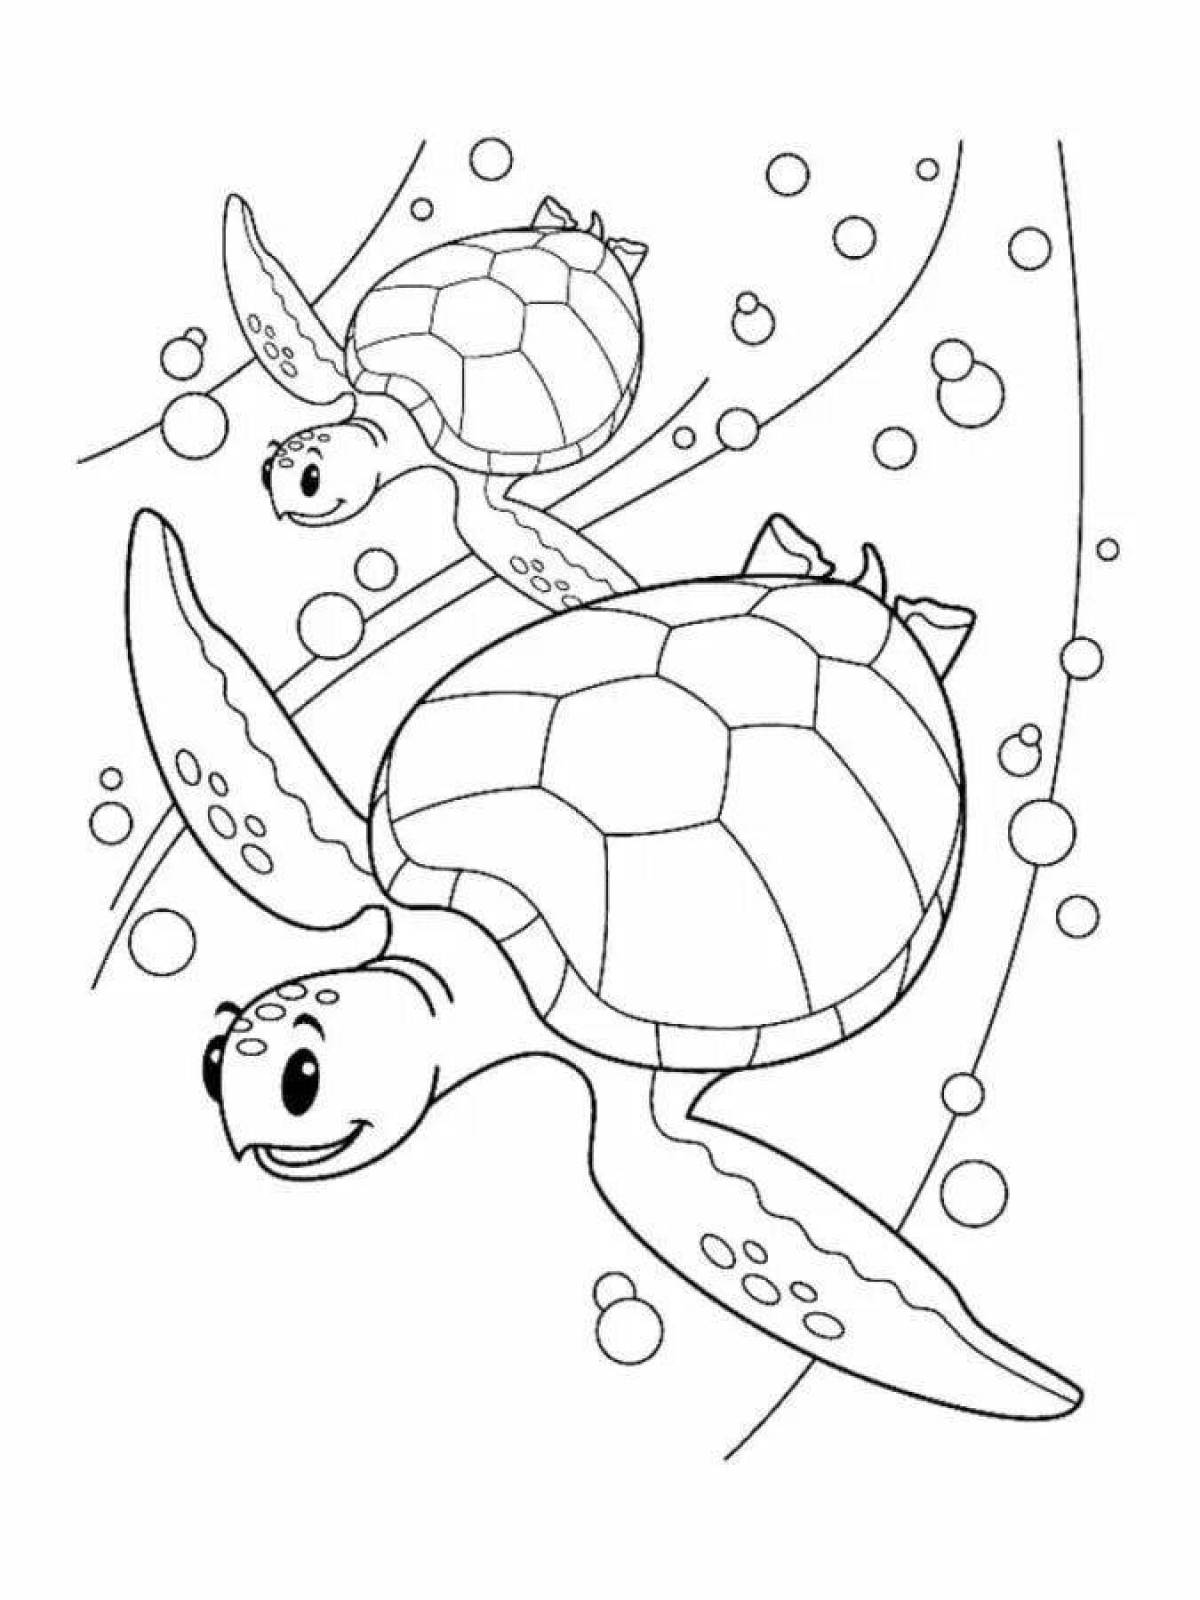 Раскраска яркая морская черепаха